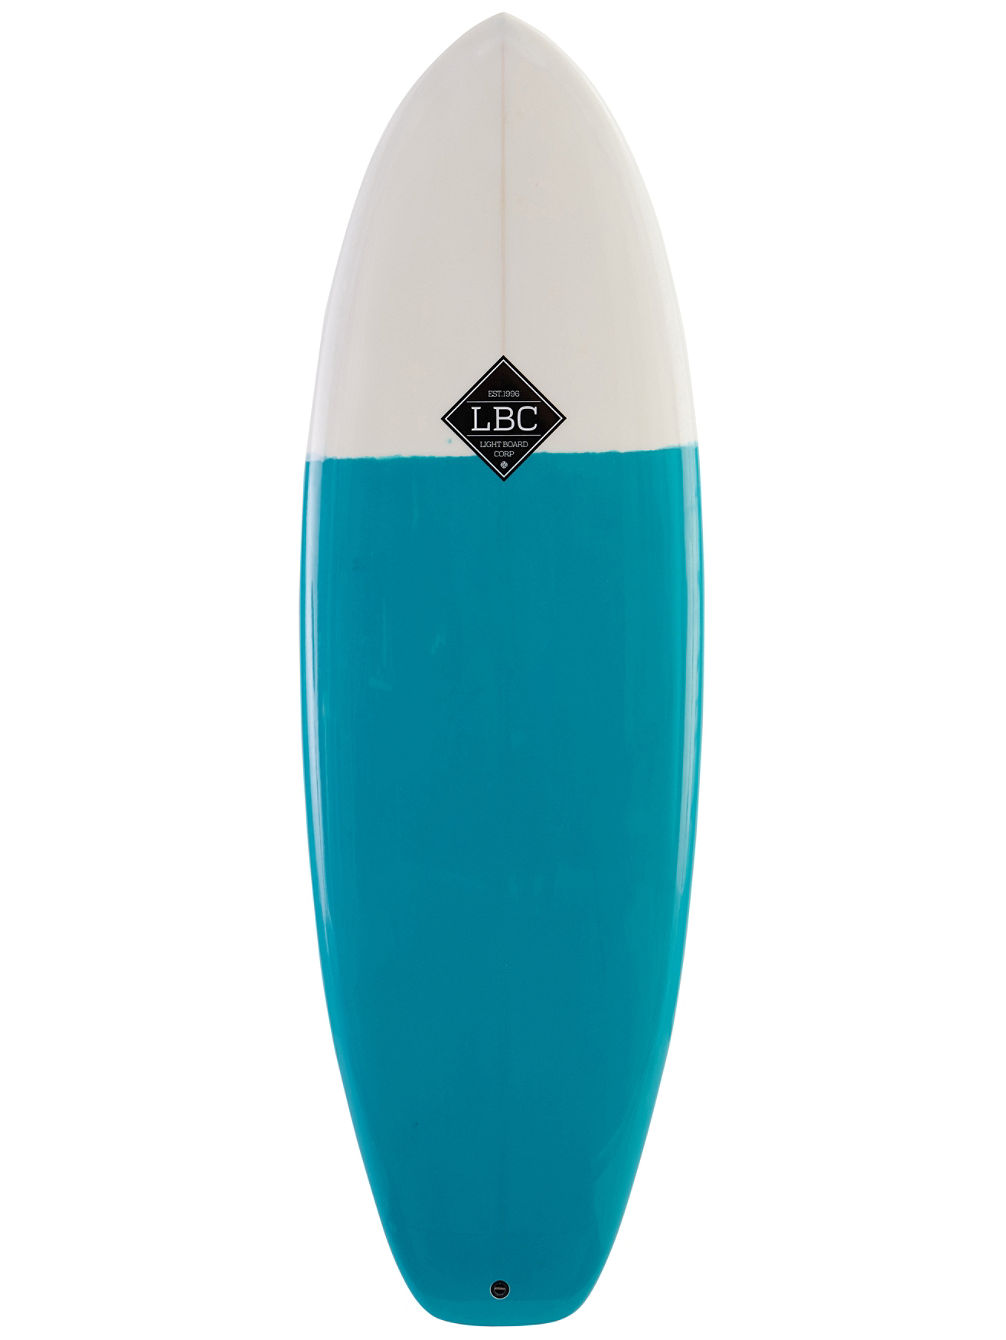 Bomb Resin Tint White/Blue 6&amp;#039;0 Planche de Surf